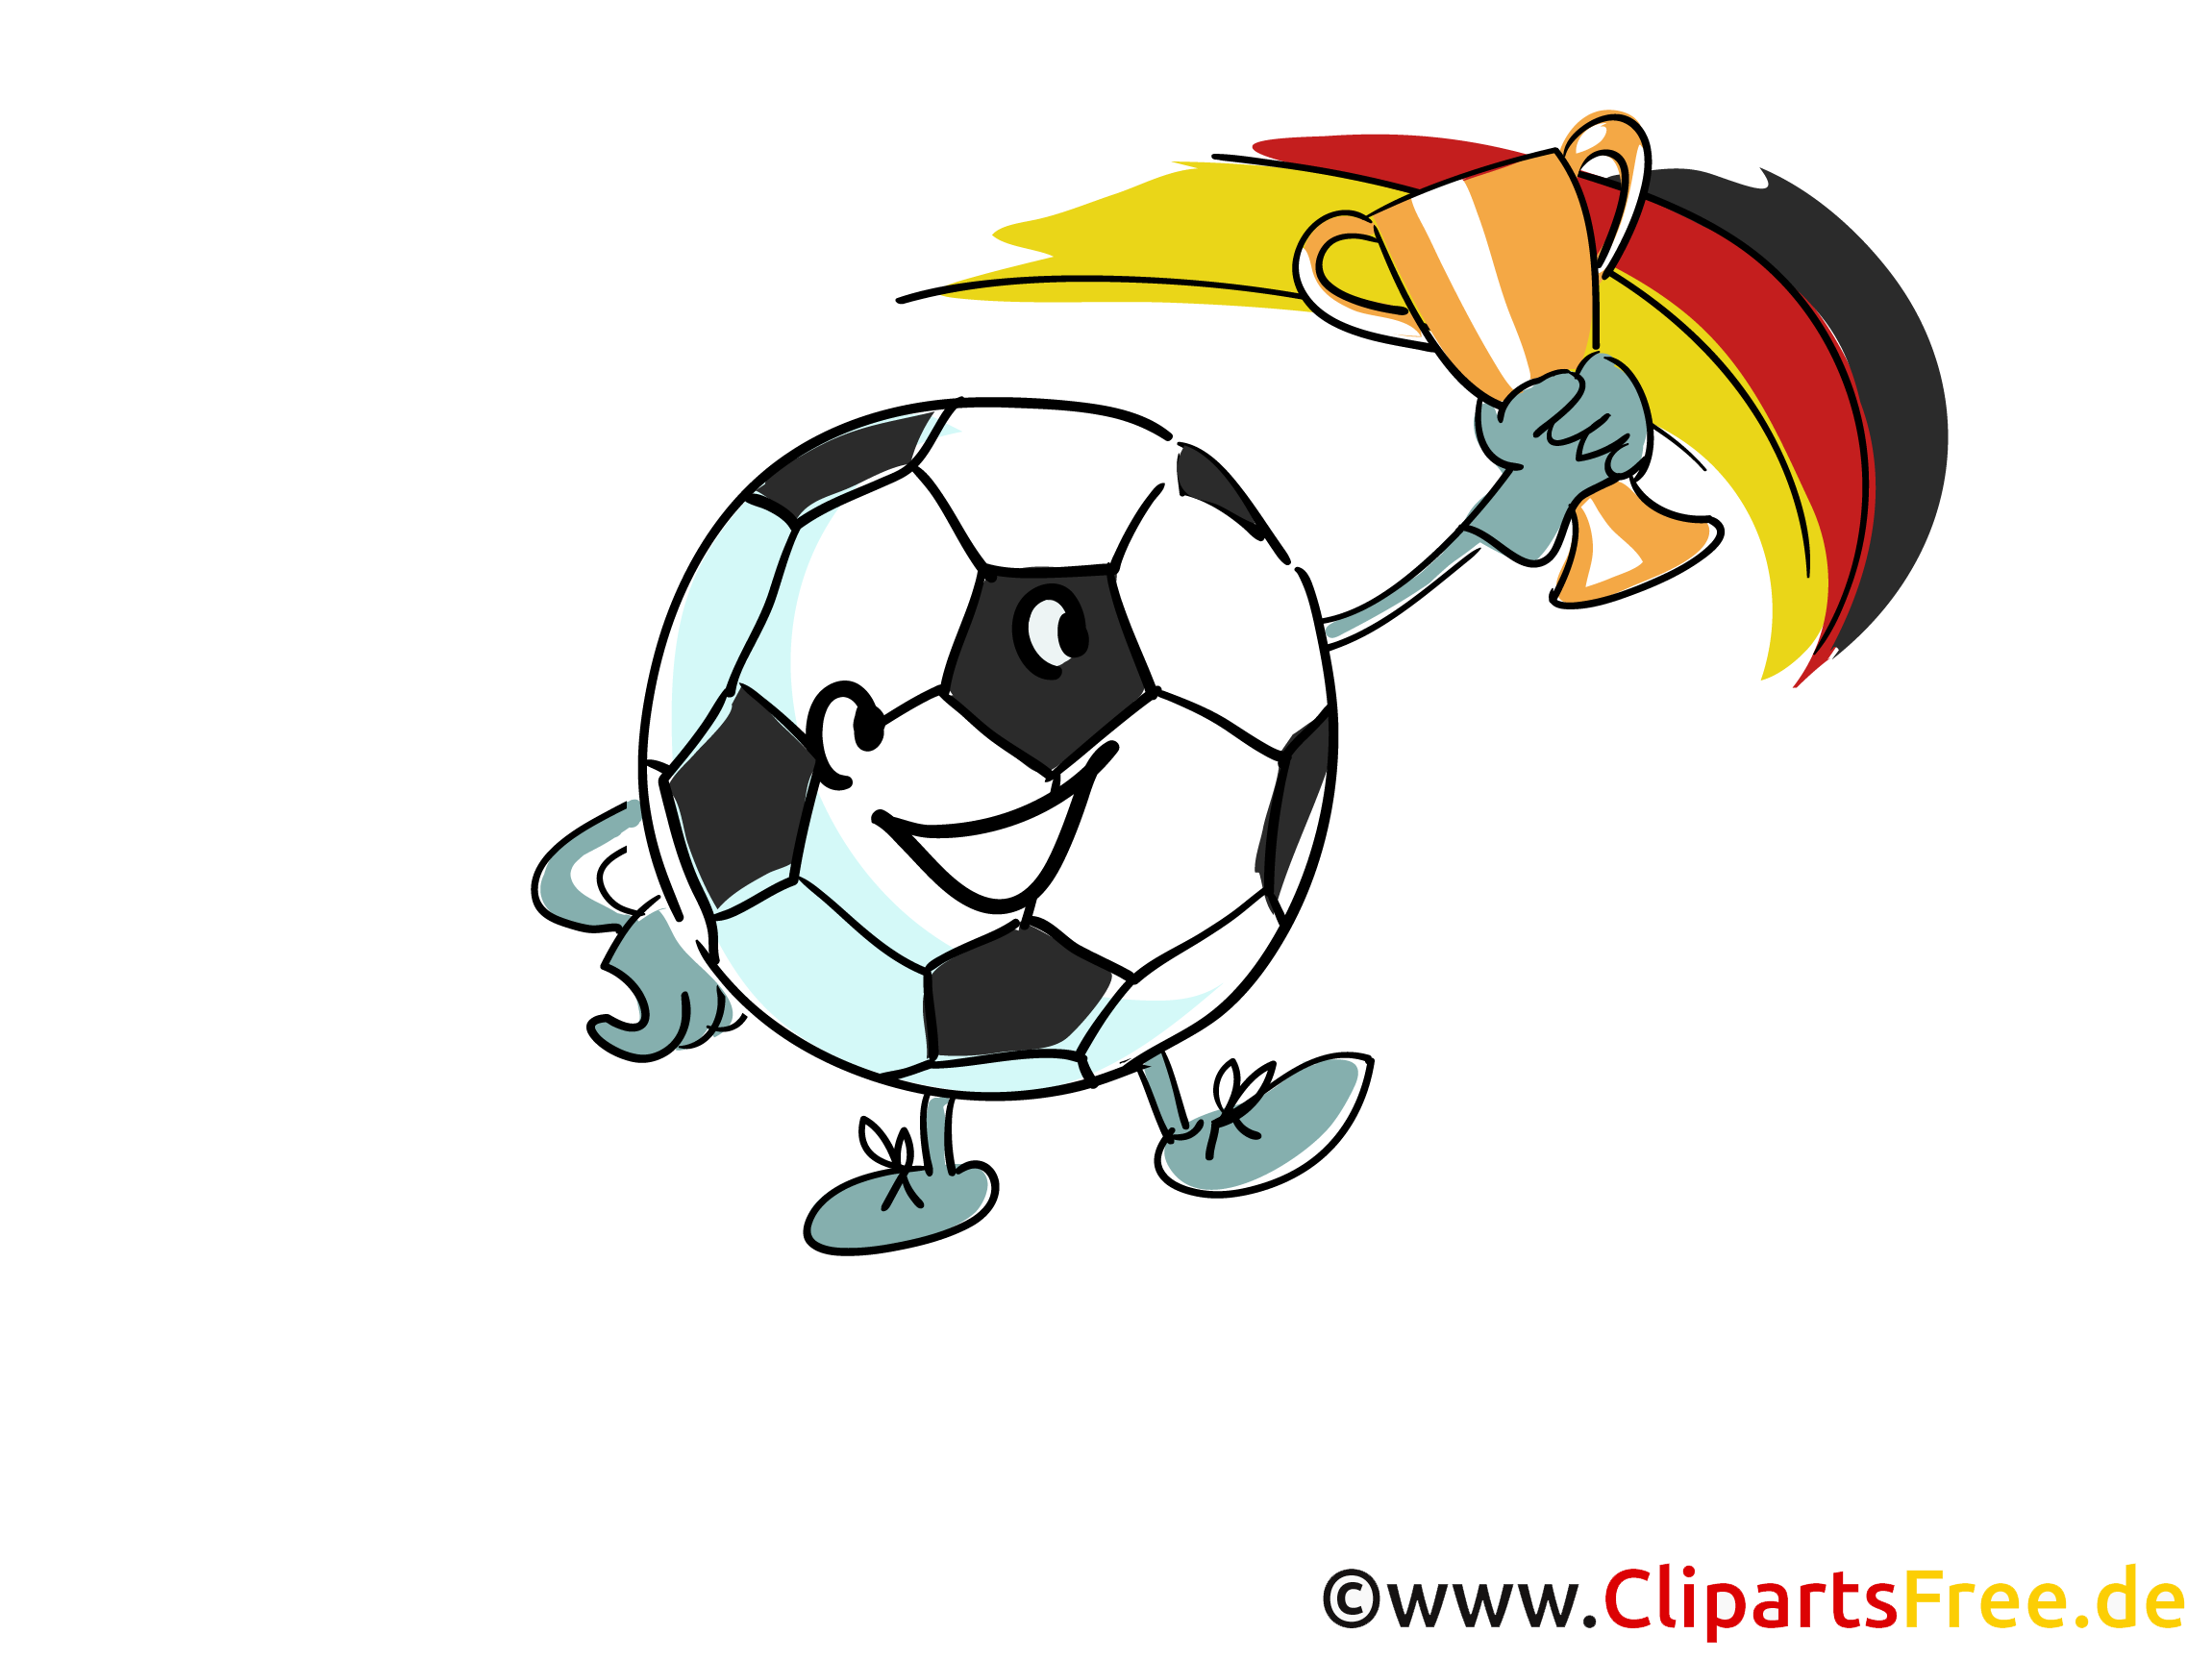 clipart fußball kostenlos download - photo #18